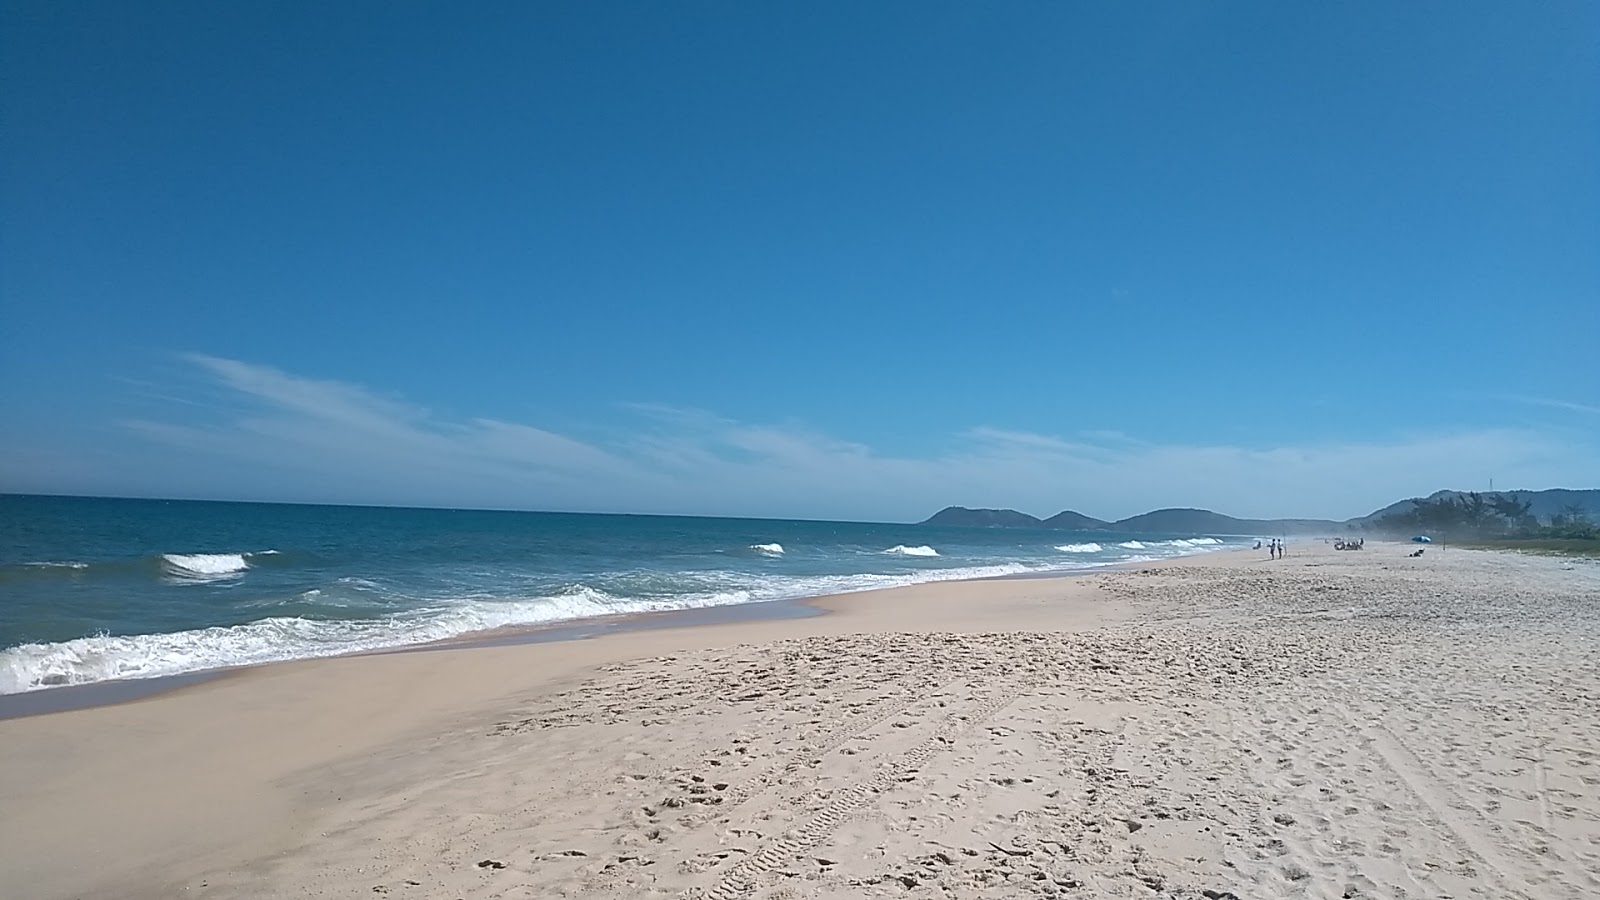 Praia de Jacone II'in fotoğrafı parlak ince kum yüzey ile